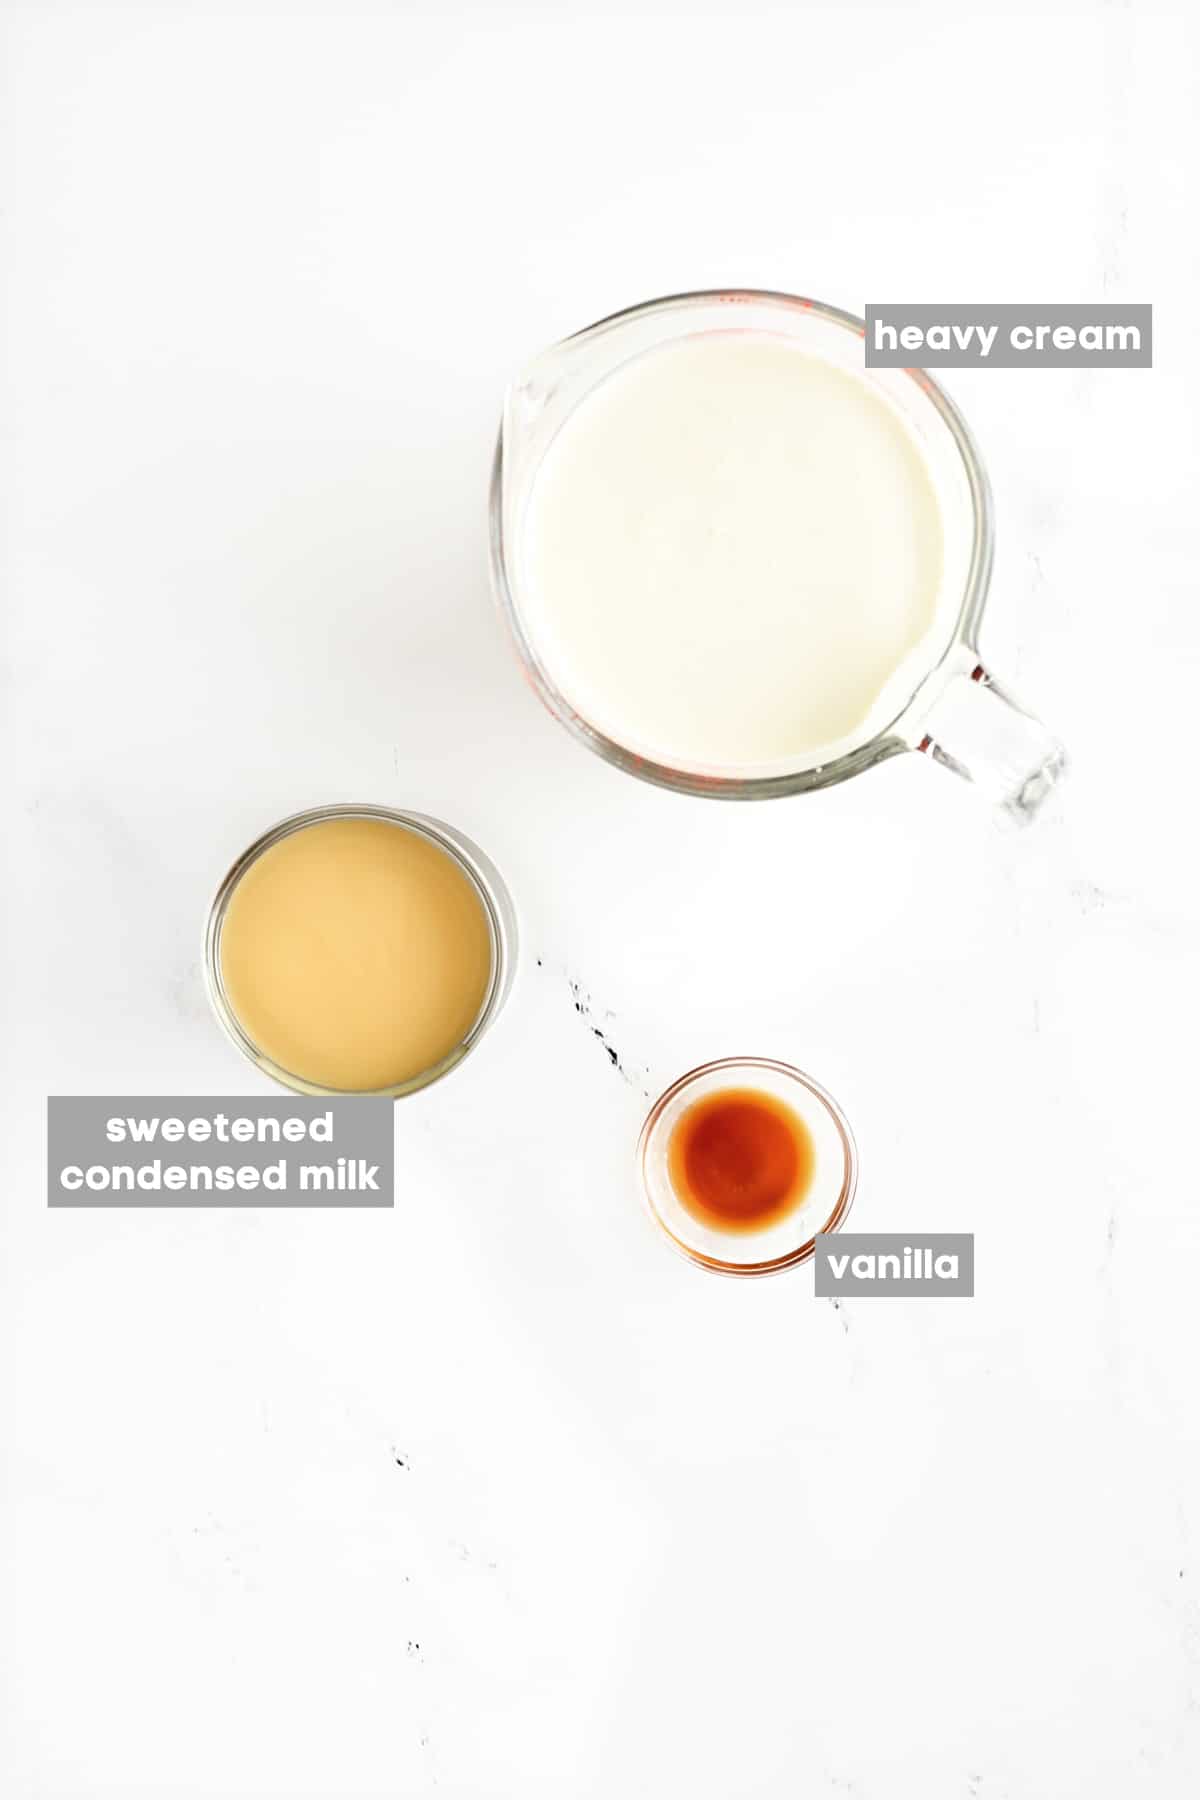 Heavy cream, sweetened condensed milk, and vanilla extract.